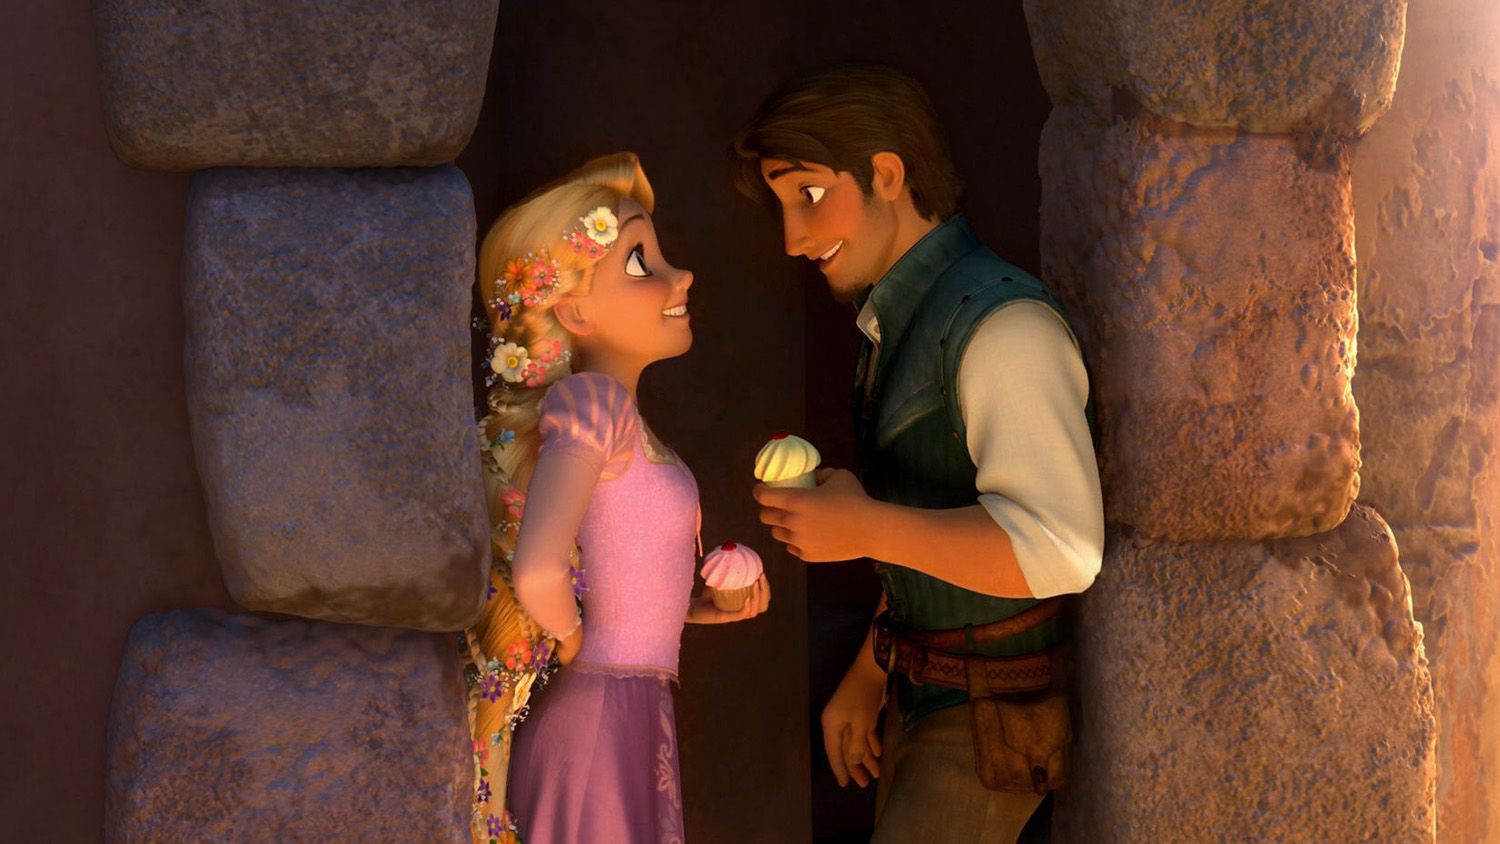 Flynn Rider e Rapunzel - Foto: Reprodução/Disney